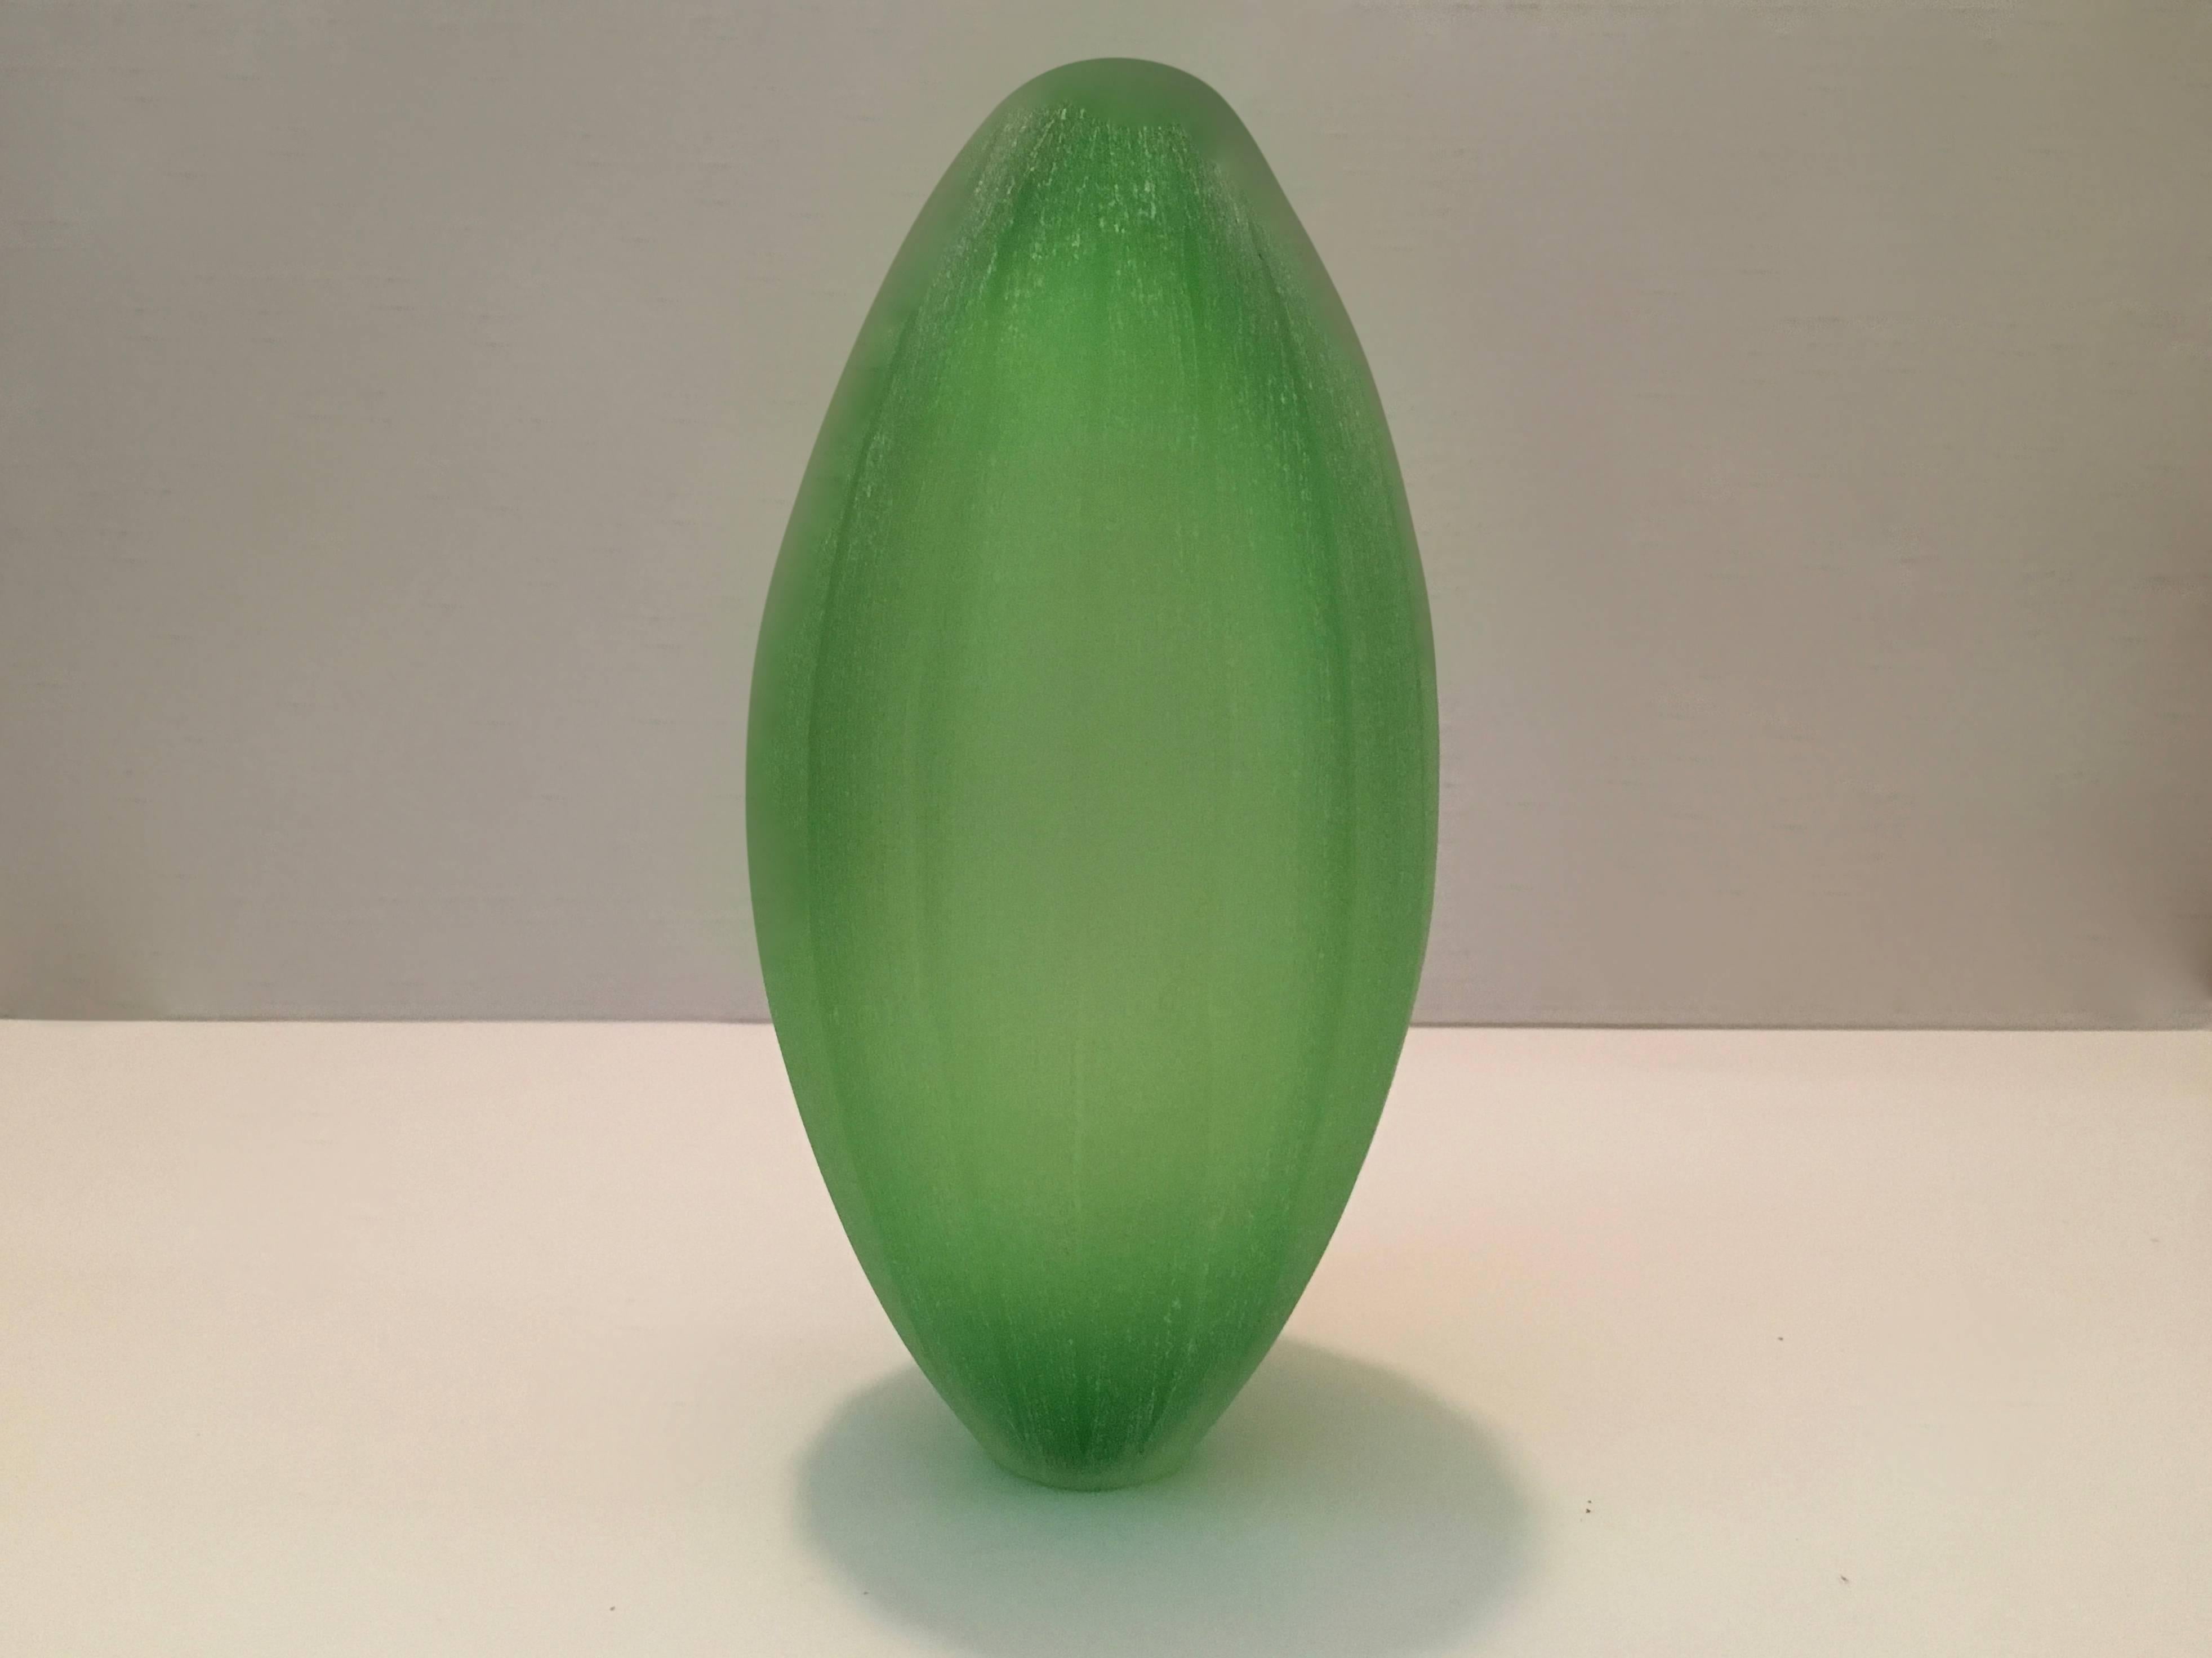 Vase créé par Laura de Santillana en édition pour Arcade, 2001. Il fait partie d'une série de vases inspirés de formes de fruits tropicaux et de plantes avec la même finition mate, gravée à la main :
PAPAIA, fabriqué en trois différentes nuances de